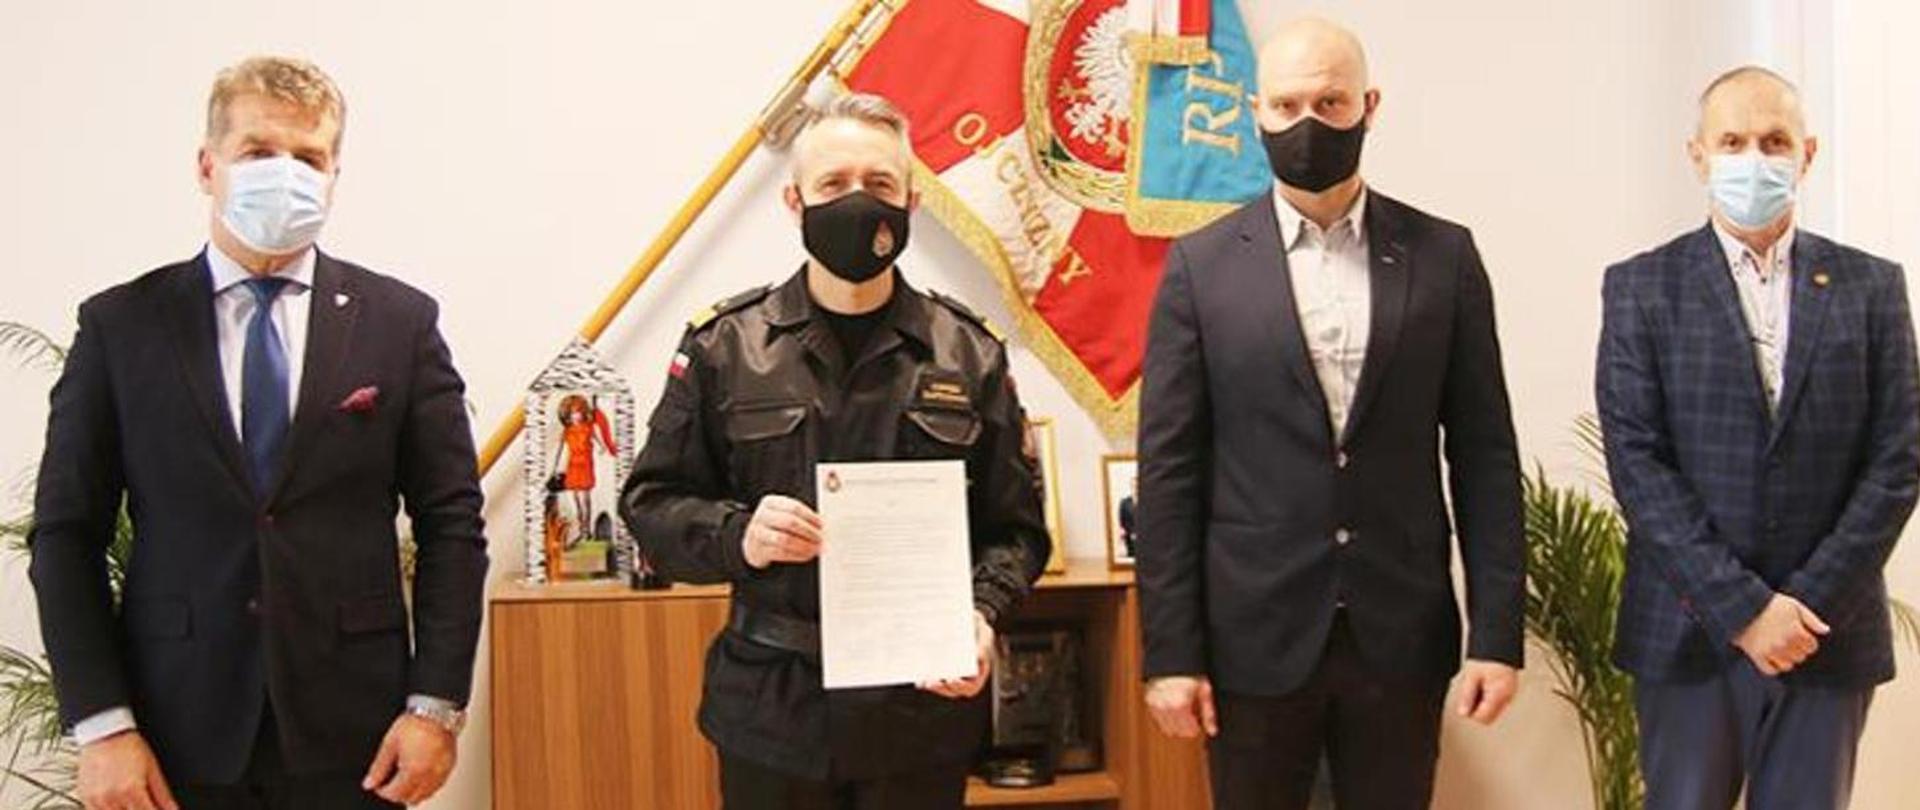 Komendant Główny Państwowej Straży Pożarnej nadbryg. Andrzej Bartkowiak, wraz z przedstawicielami Związków Zawodowych działających w PSP